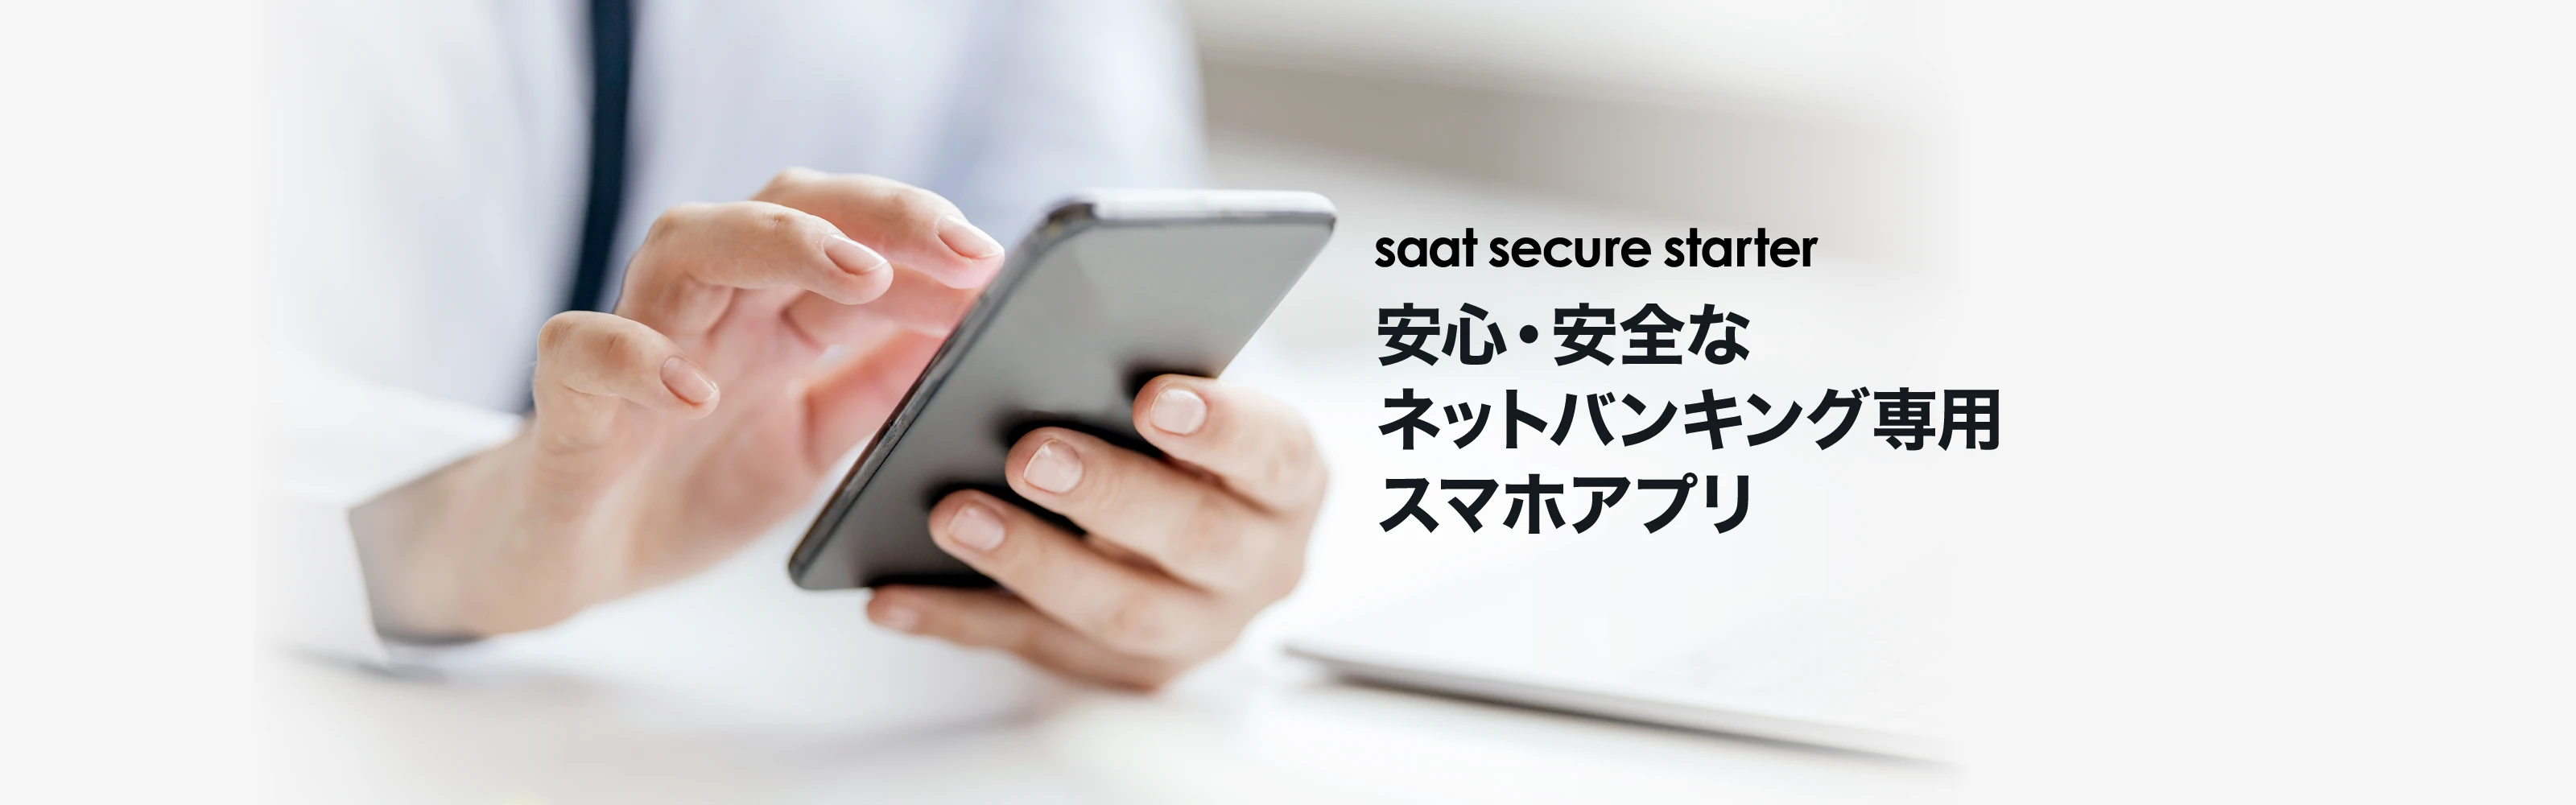 saat secure starter｜安心・安全なネットバンキング専用スマホアプリ